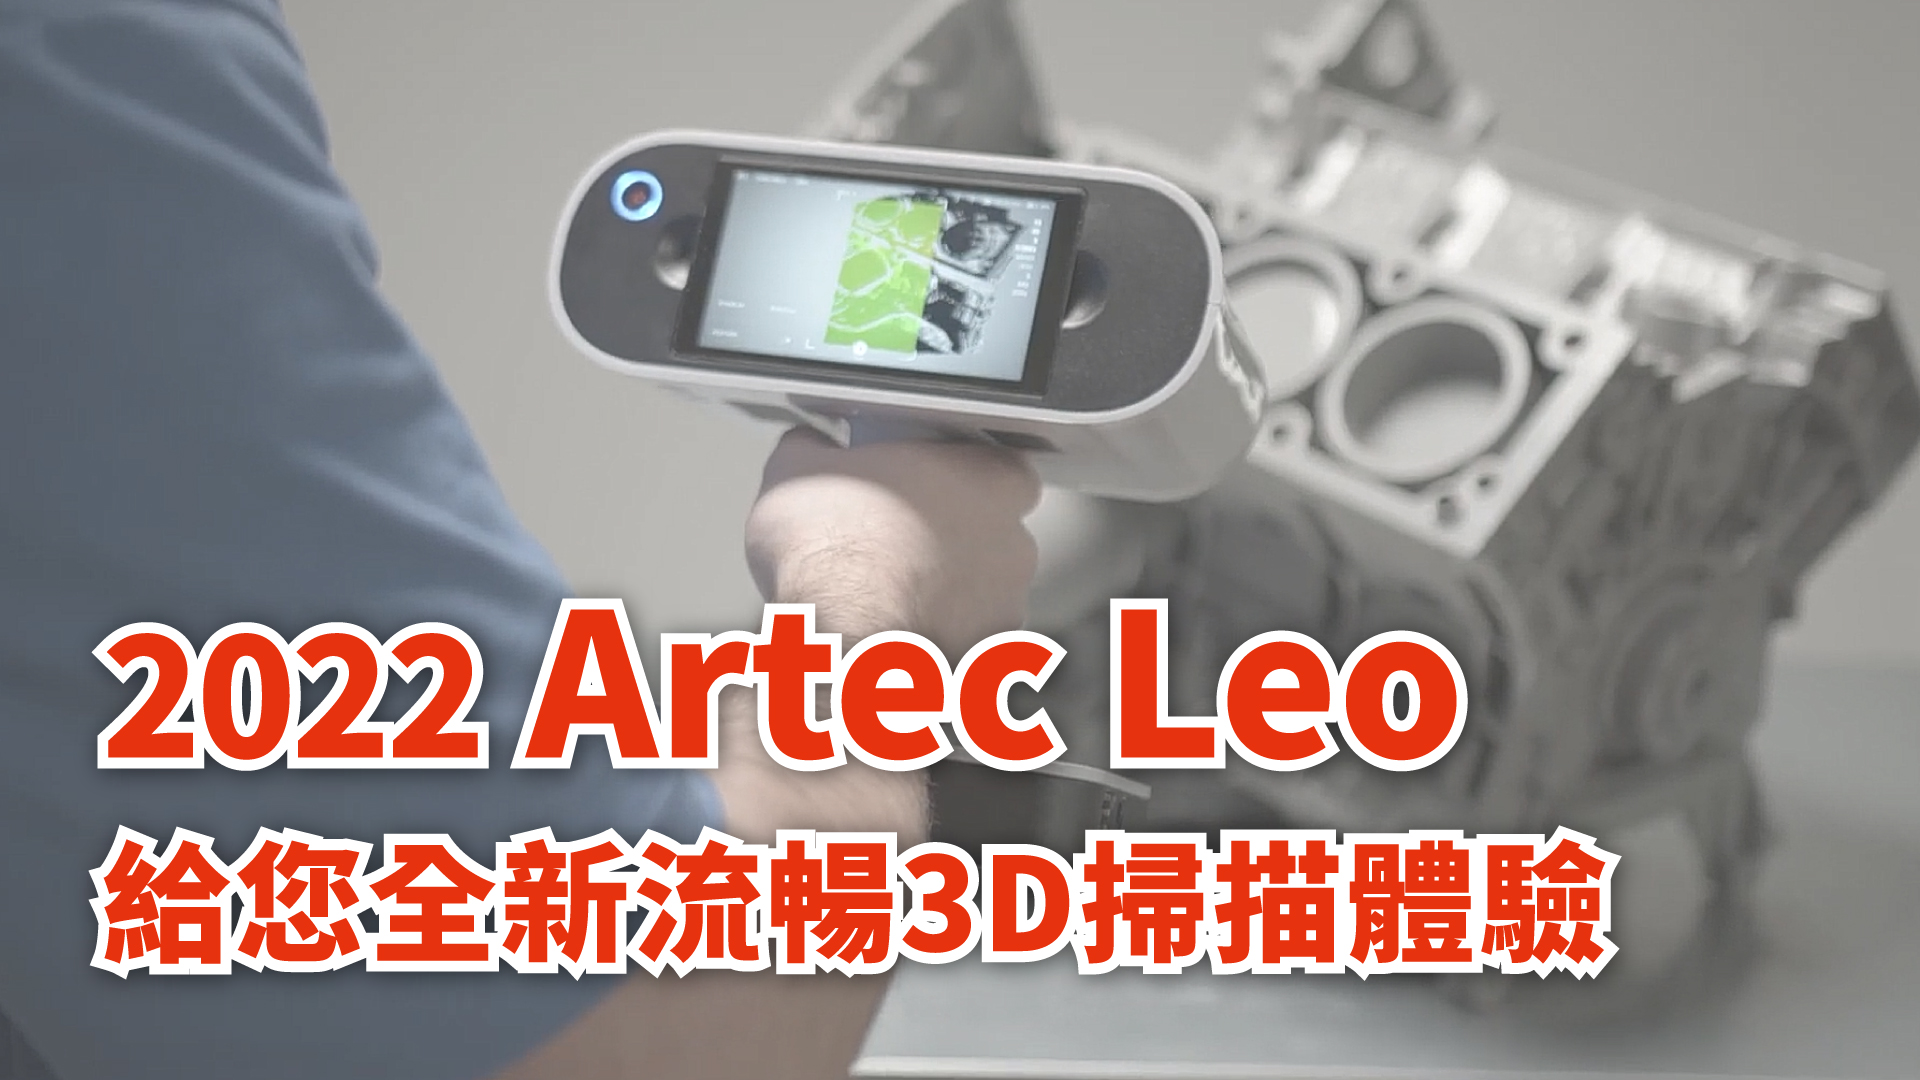 2022 Artec Leo給您全新流暢3D掃描體驗